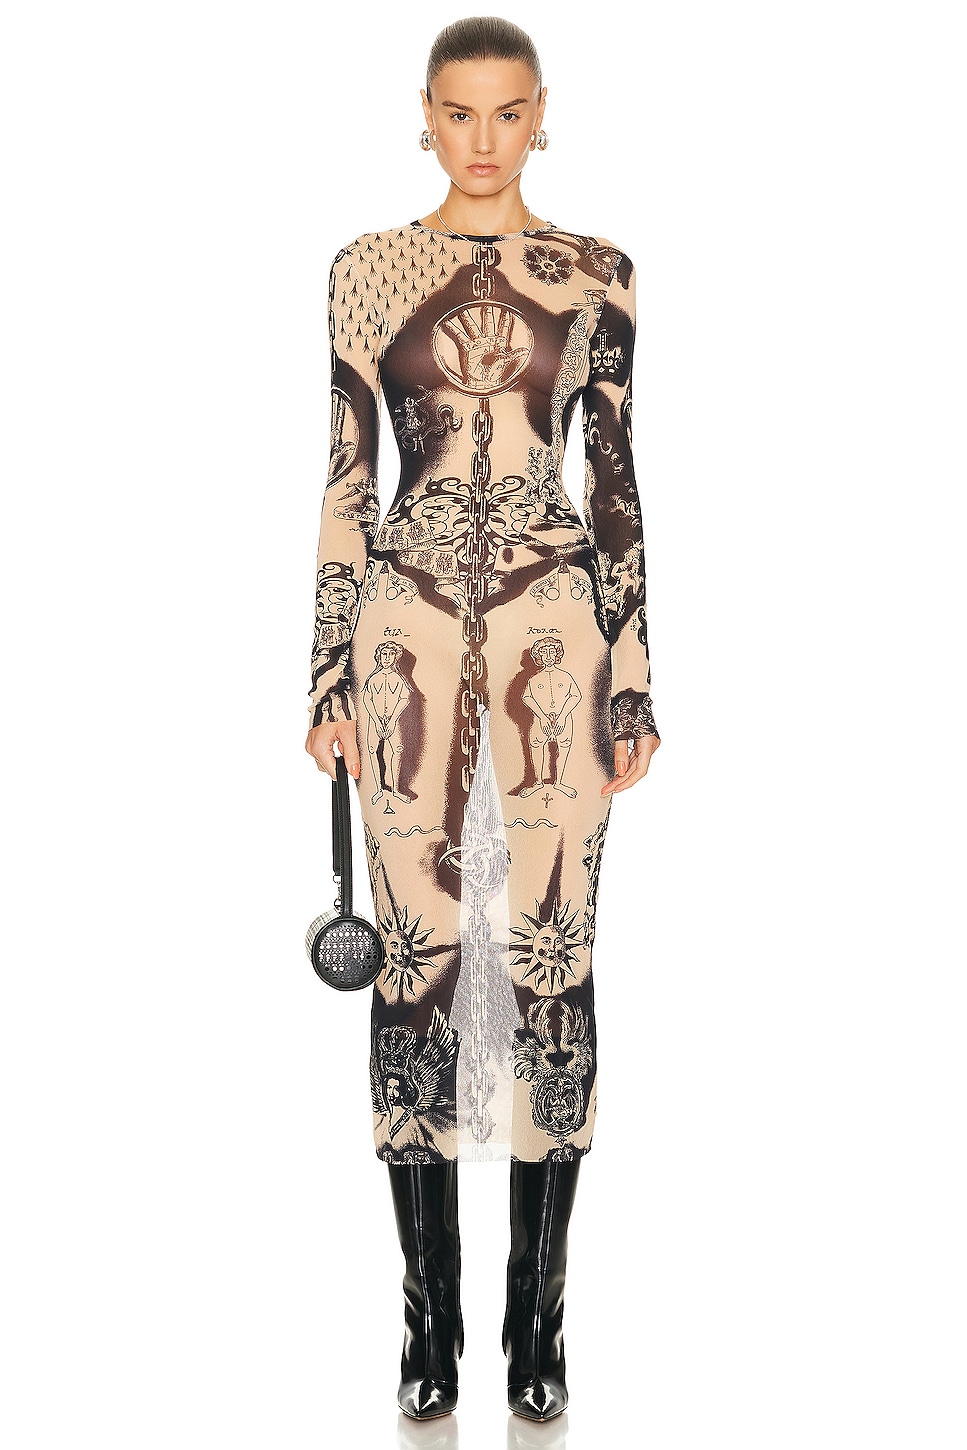 Image 1 of Jean Paul Gaultier Printed Heraldique Long Sleeve Crew Neck Dress in Nude & Navy